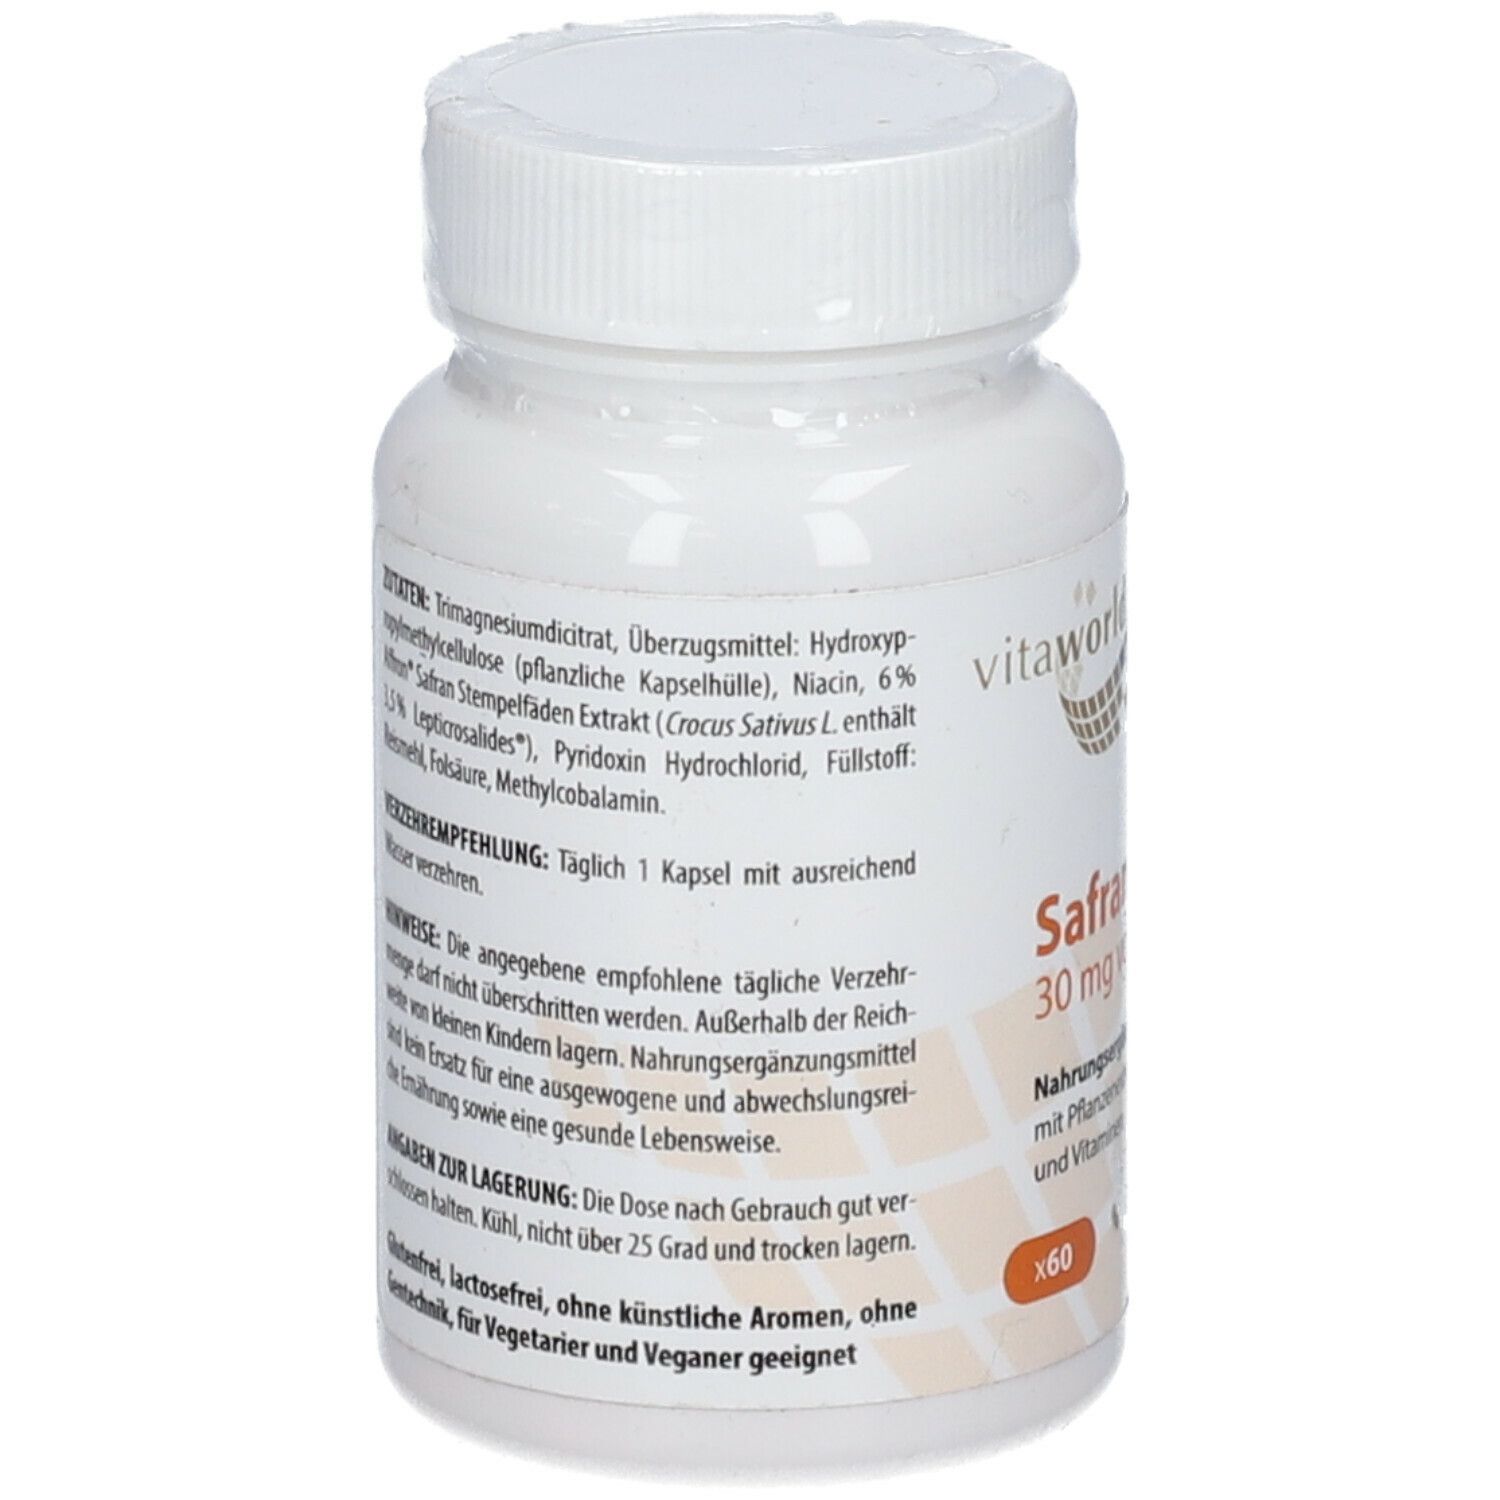 Safran Extrakt 30 mg